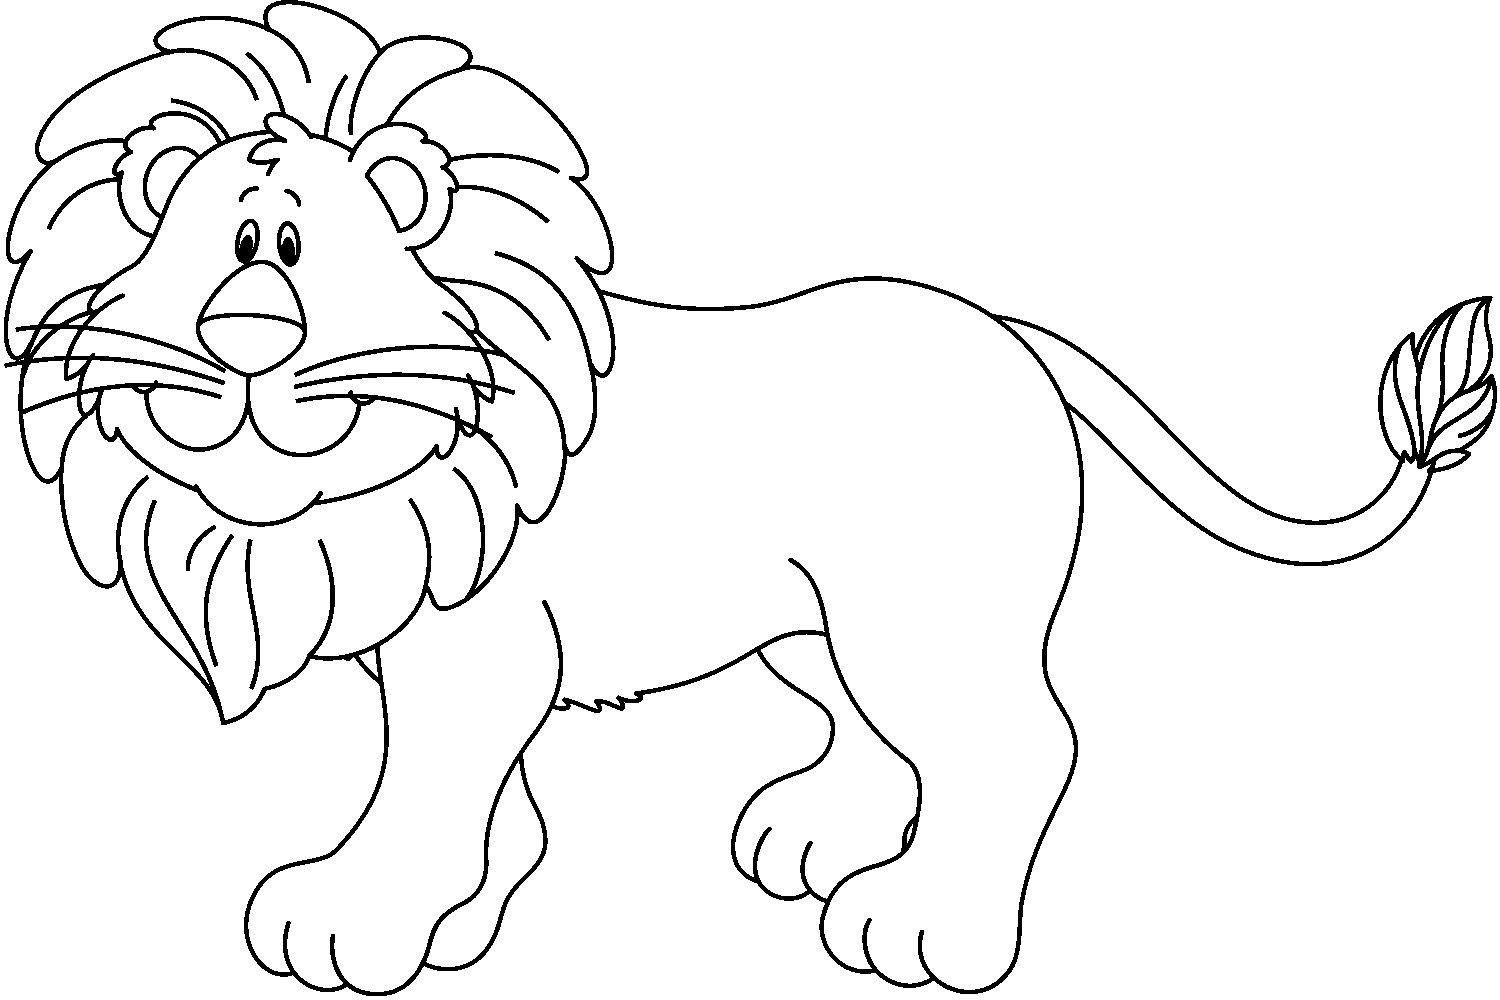 Раскраска «цветной лев» для детей 3-4 лет